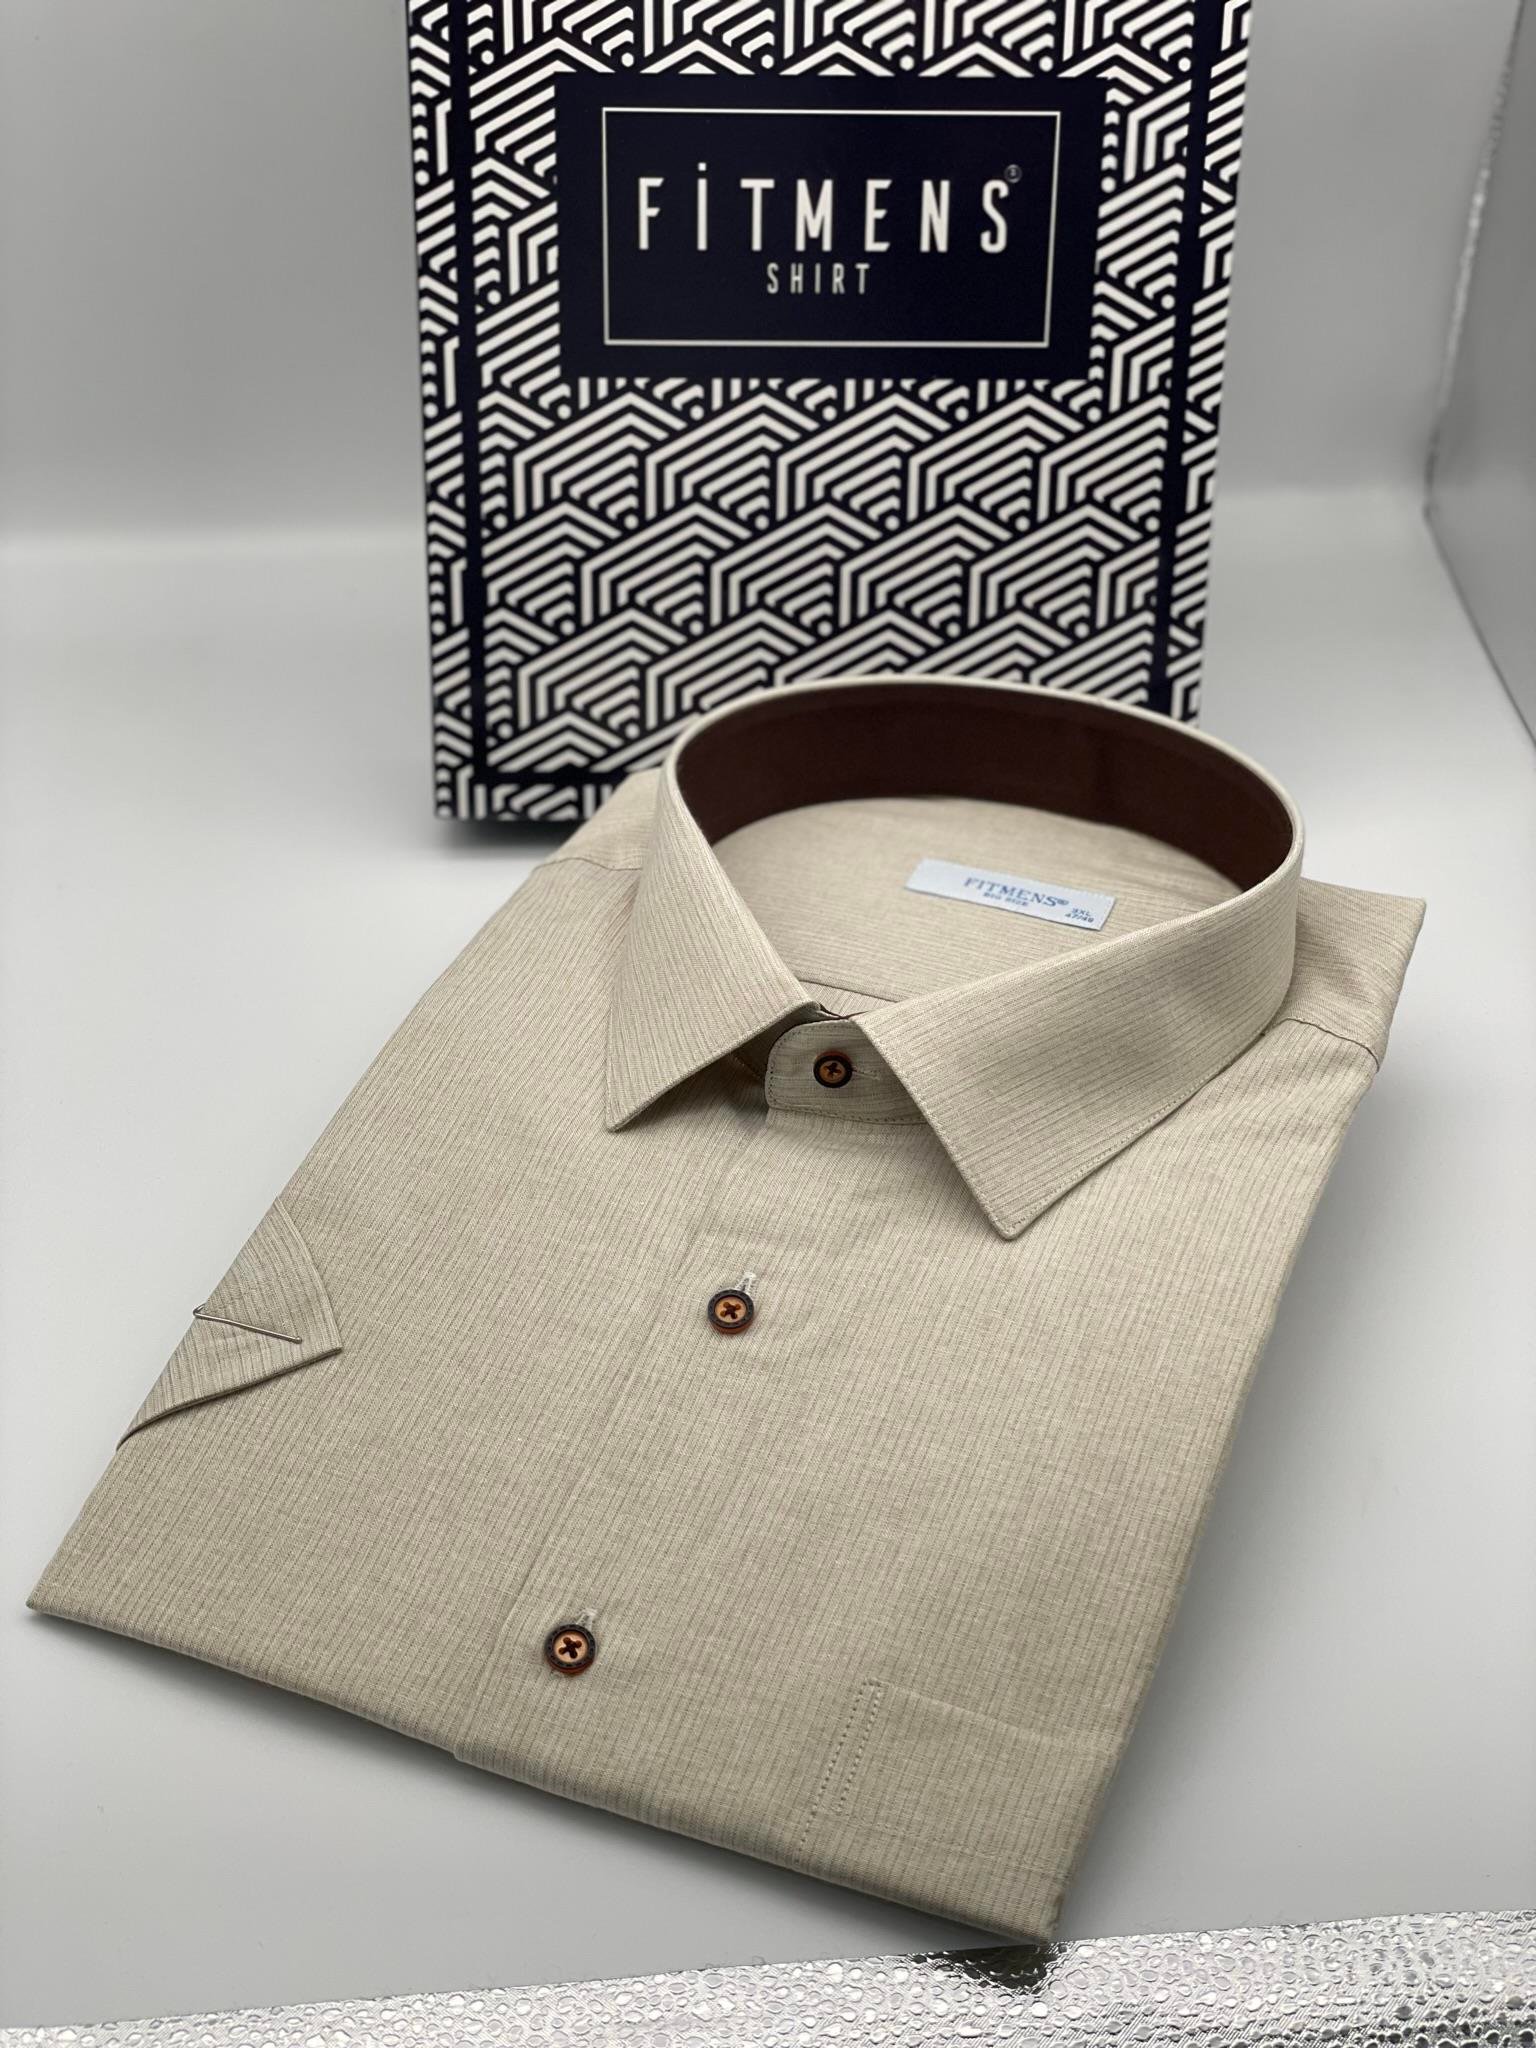 Fitmens | Erkek Gömlek ve Aksesuar Online Alışveriş Mağazası | Battal Büyük  Beden Kısa Kol Keten Cotton Pamuk Hediye Kutulu Erkek Gömlek C.3415 - Bej